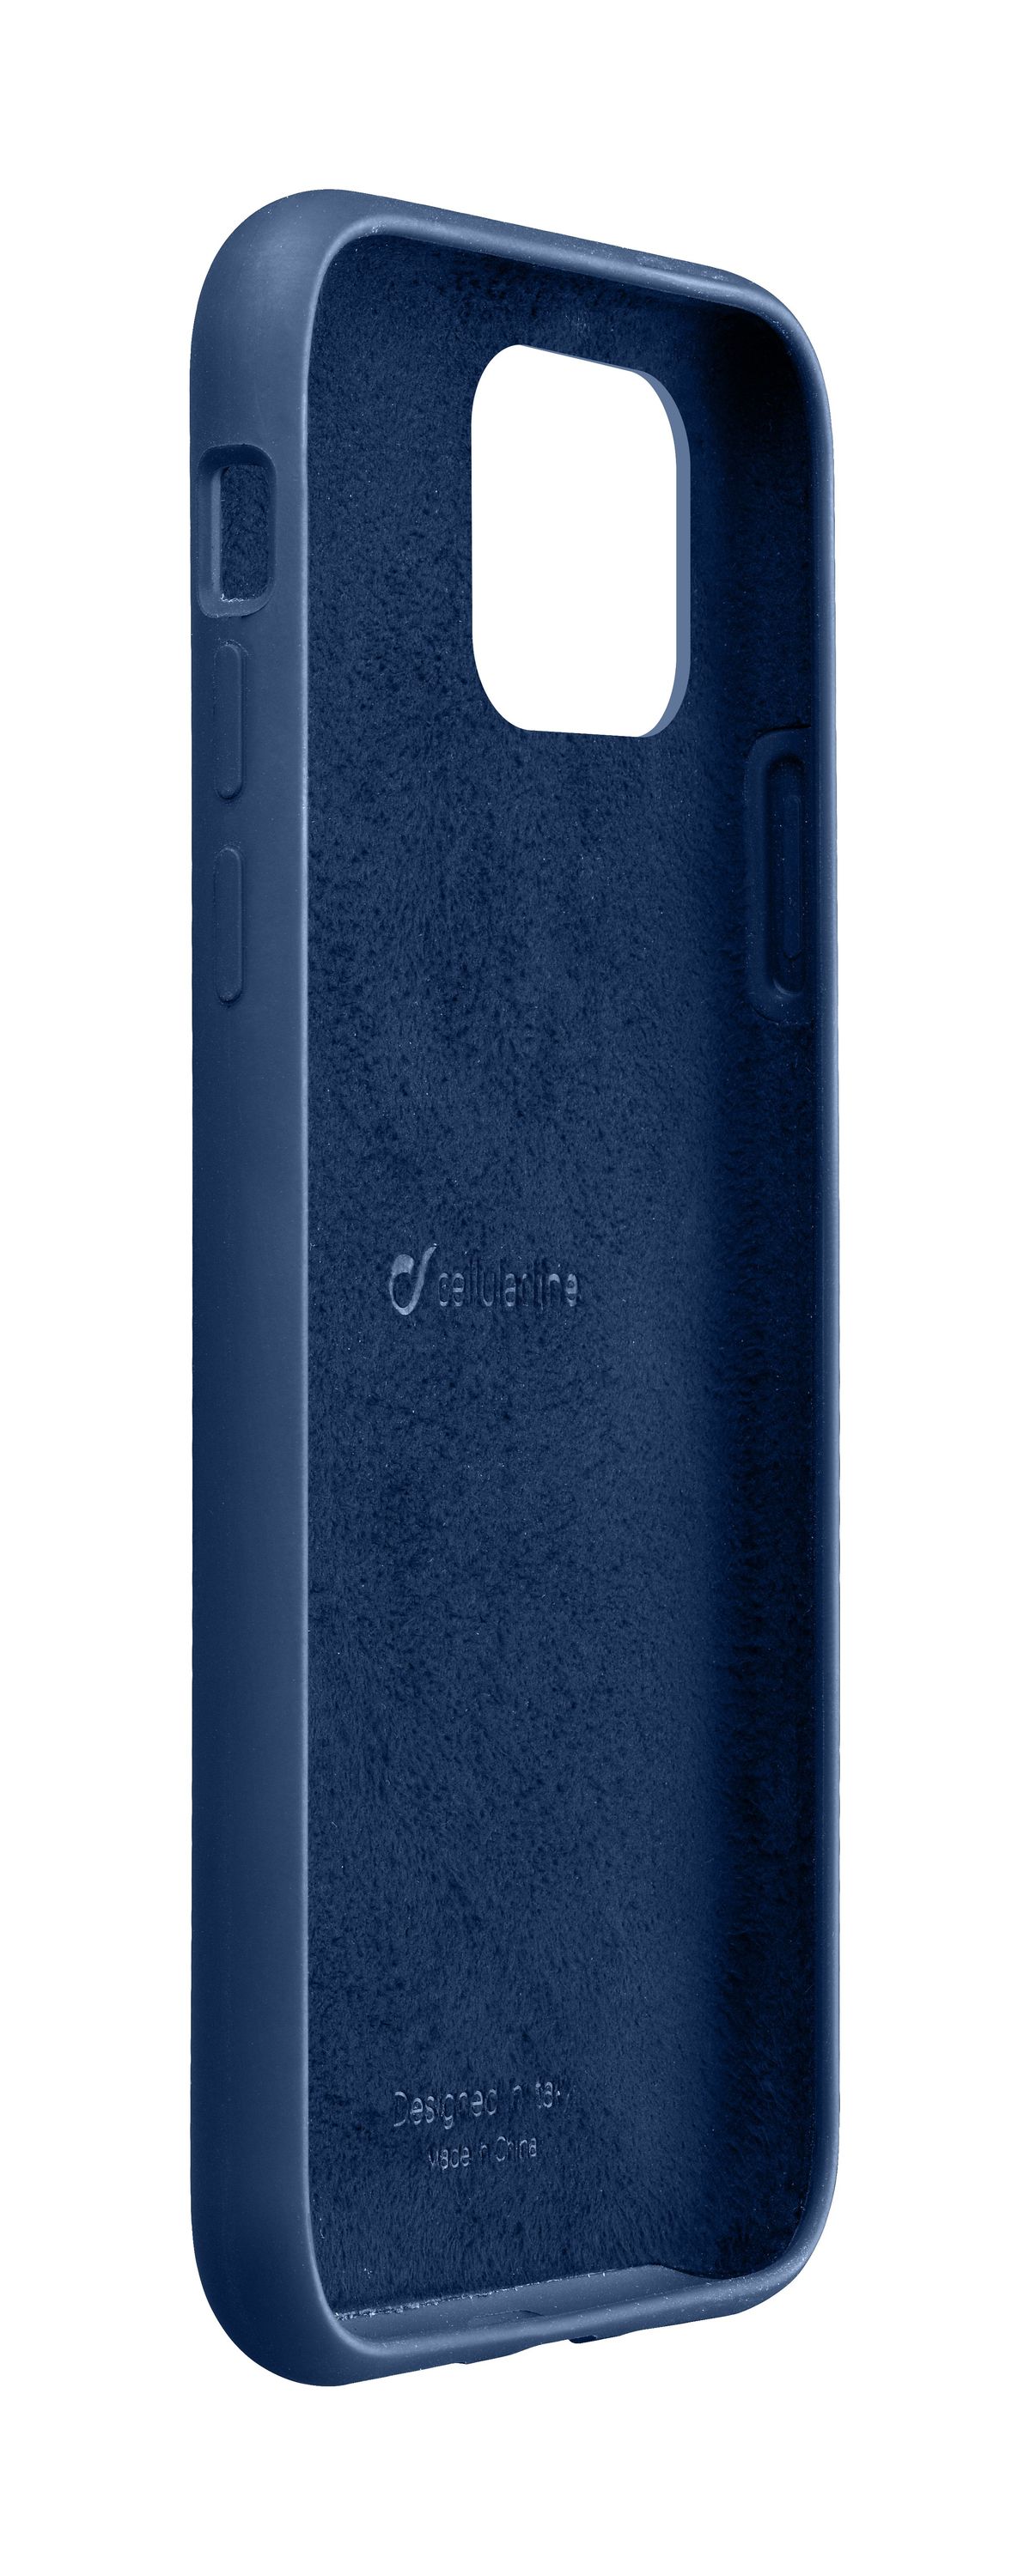 iPhone 11 Pro Max, case sensation, blue